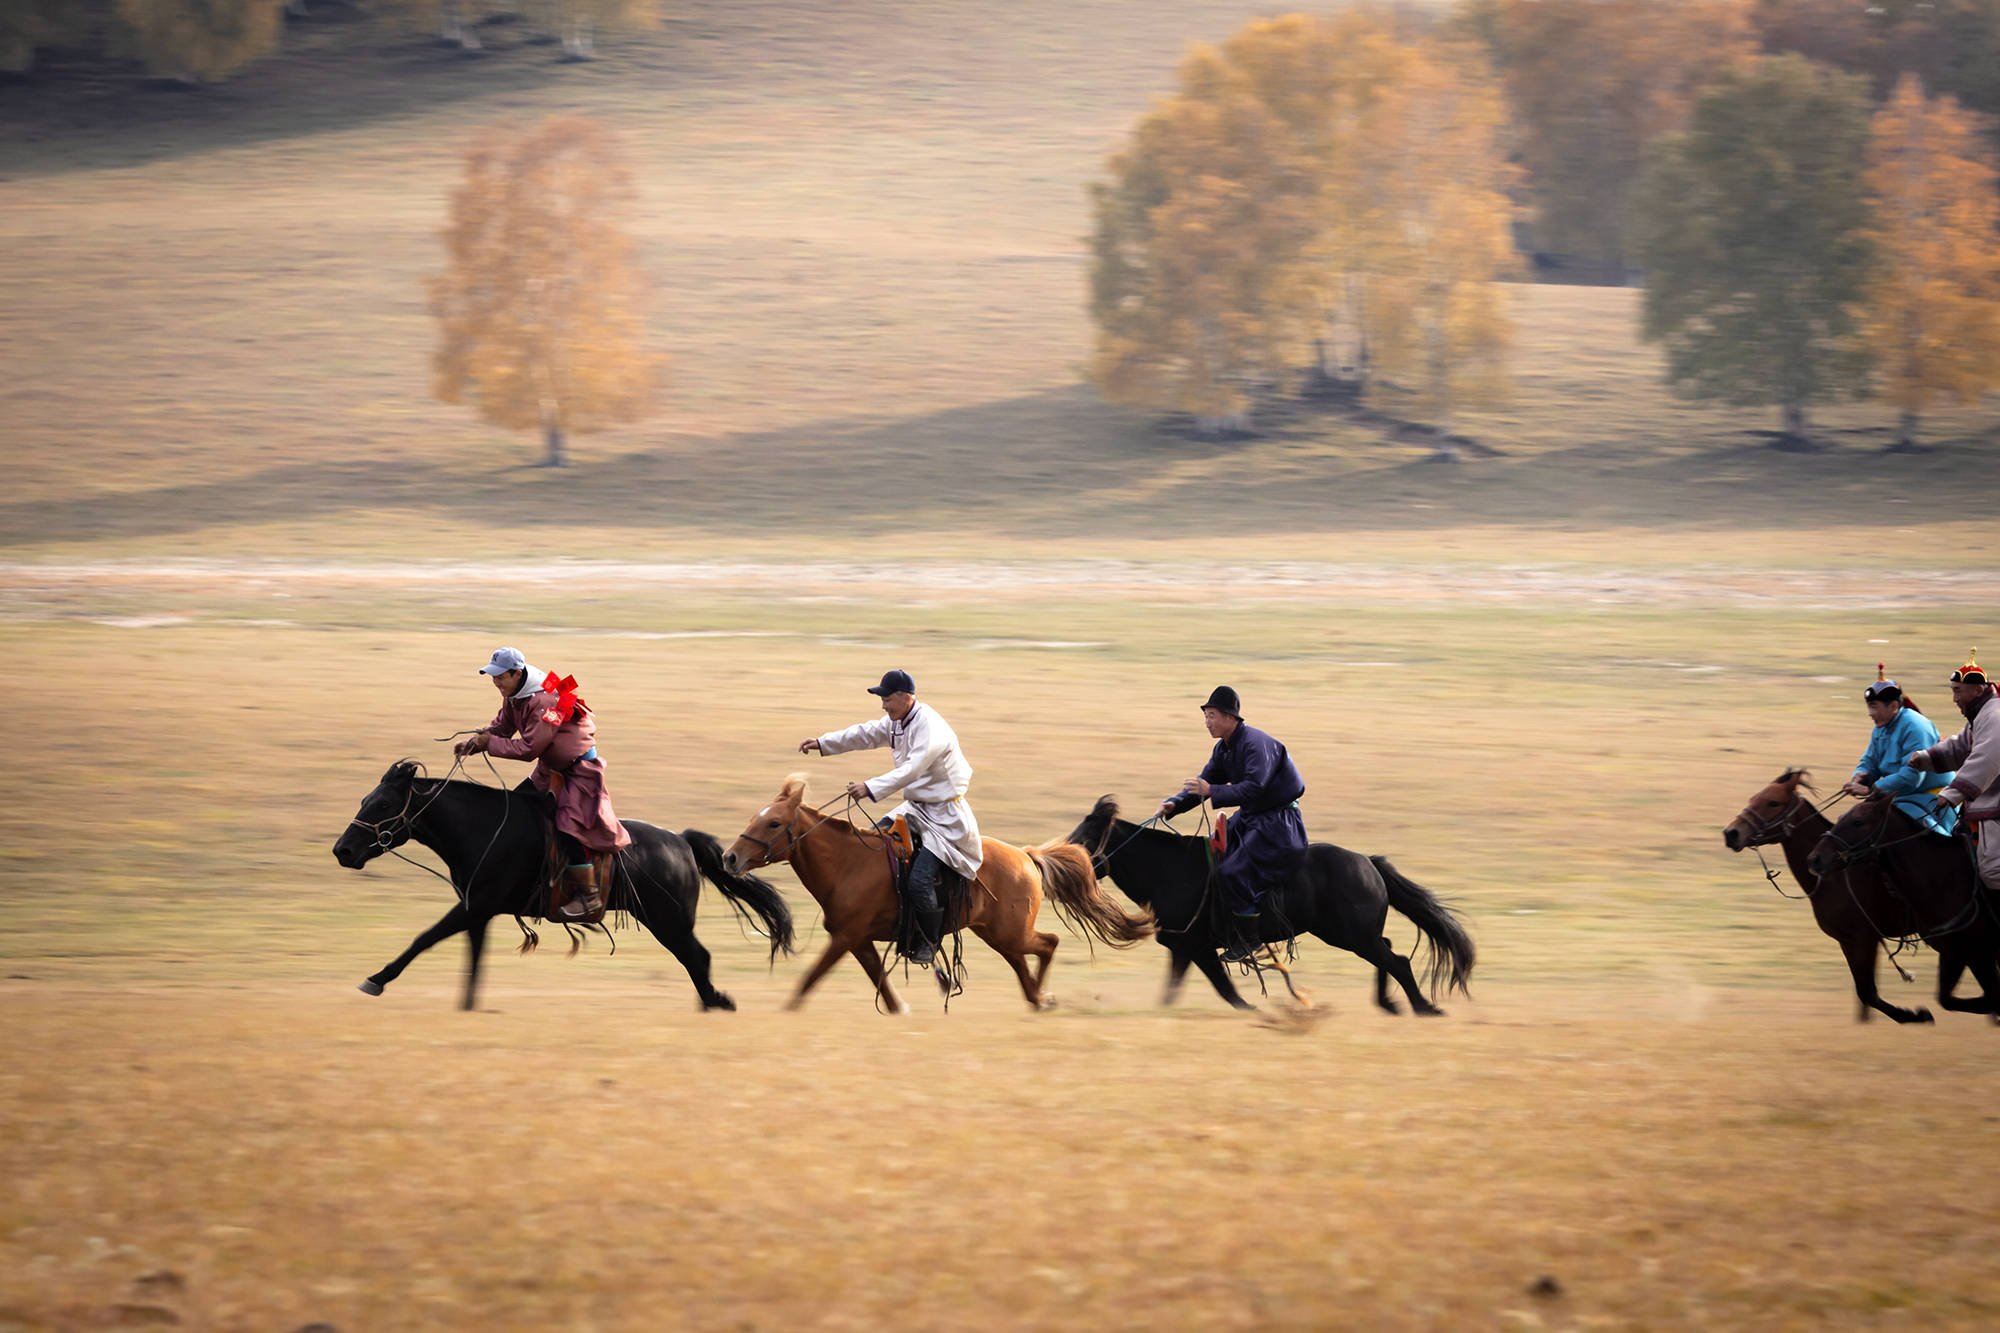 赛马是蒙古民族优良传统,这是骑手进行赛马活动